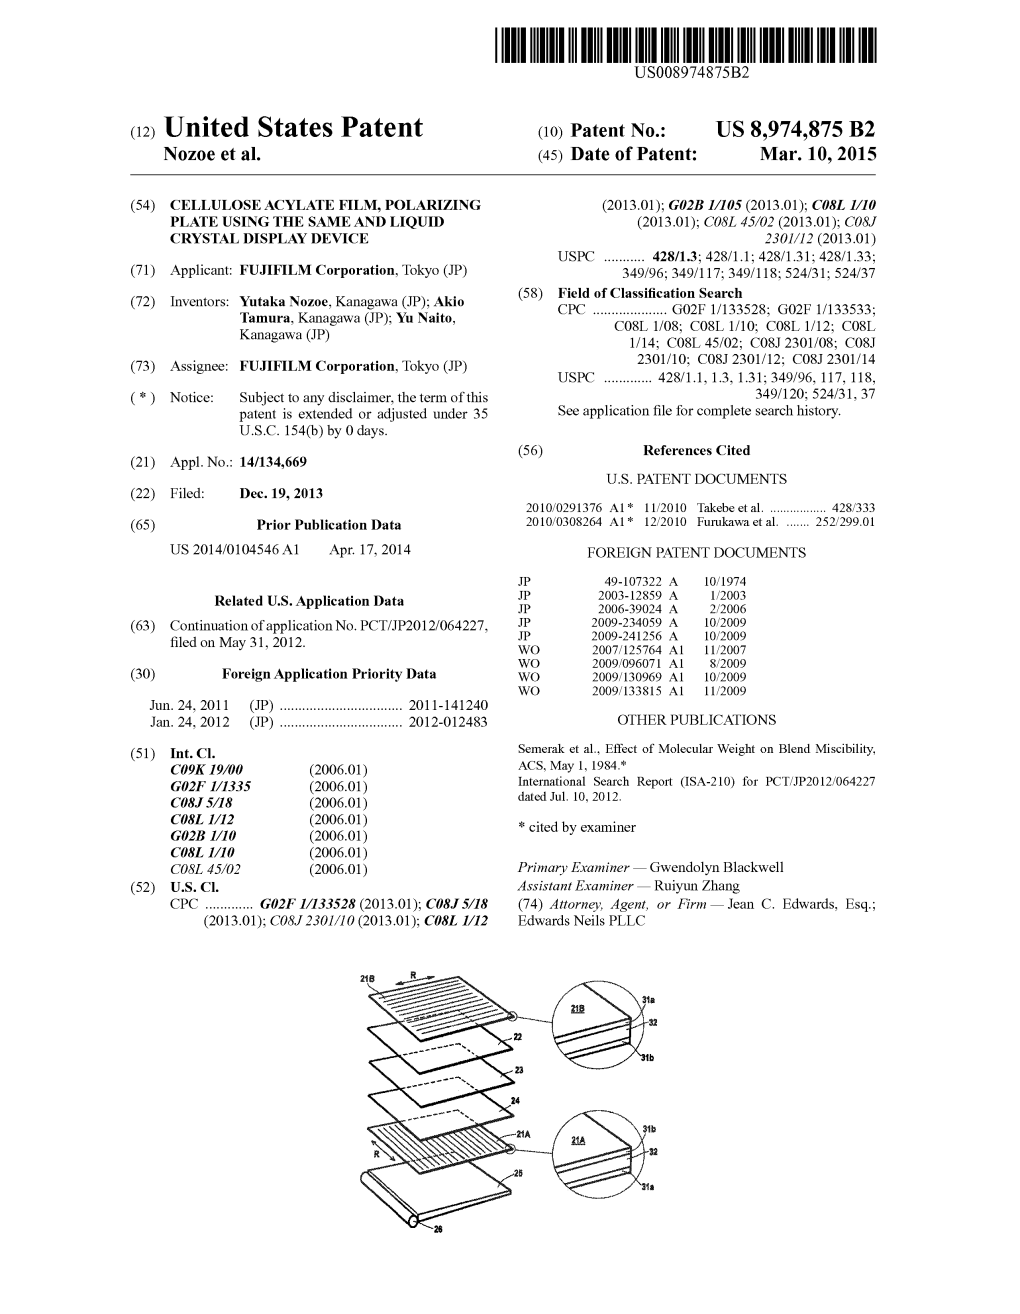 (12) United States Patent (10) Patent No.: US 8,974,875 B2 Noz0e Et Al